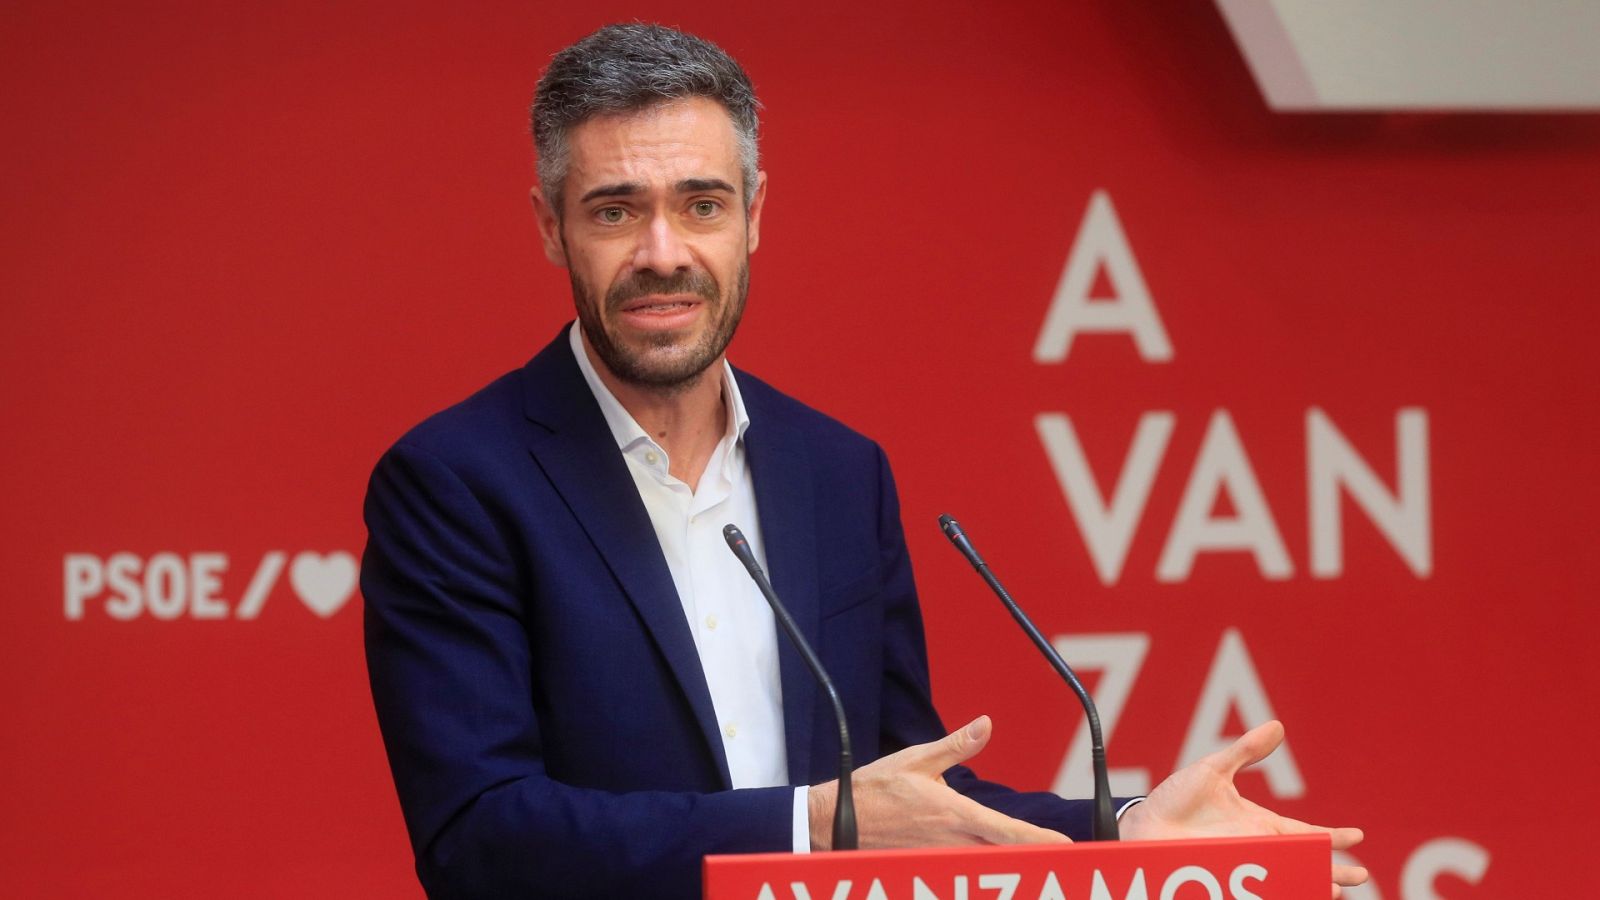 Las mañanas de RNE con Íñigo Alfonso - El PSOE quiere una postura unánime sobre financiación autonómica: "No es incompatible" - Escuchar ahora 